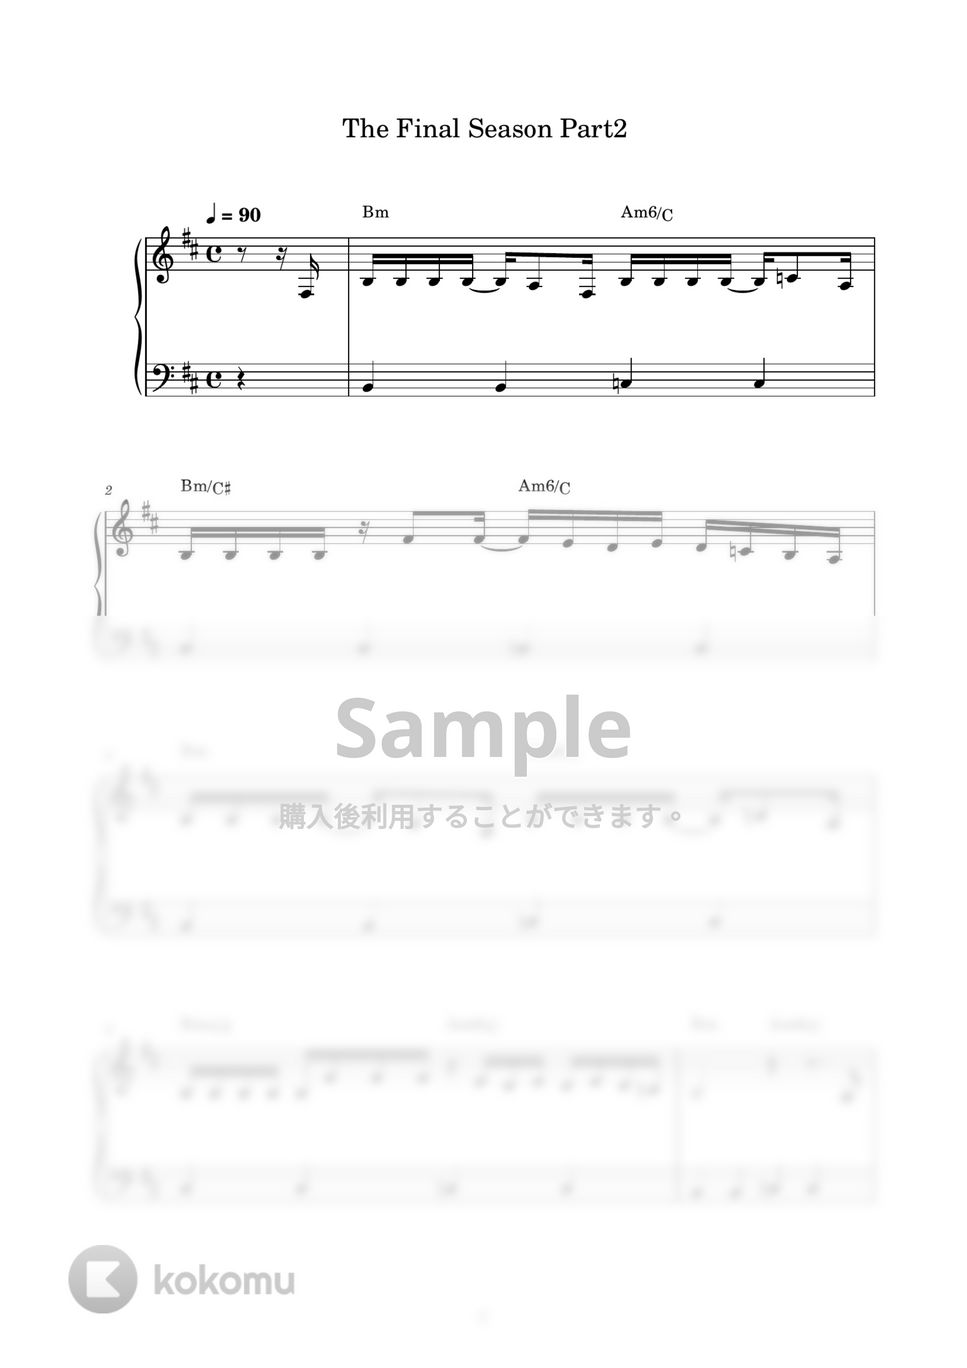 ヒグチアイ - 悪魔の子 (ピアノ楽譜 / かんたん両手 / 歌詞付き / ドレミ付き / 初心者向き) by piano.tokyo